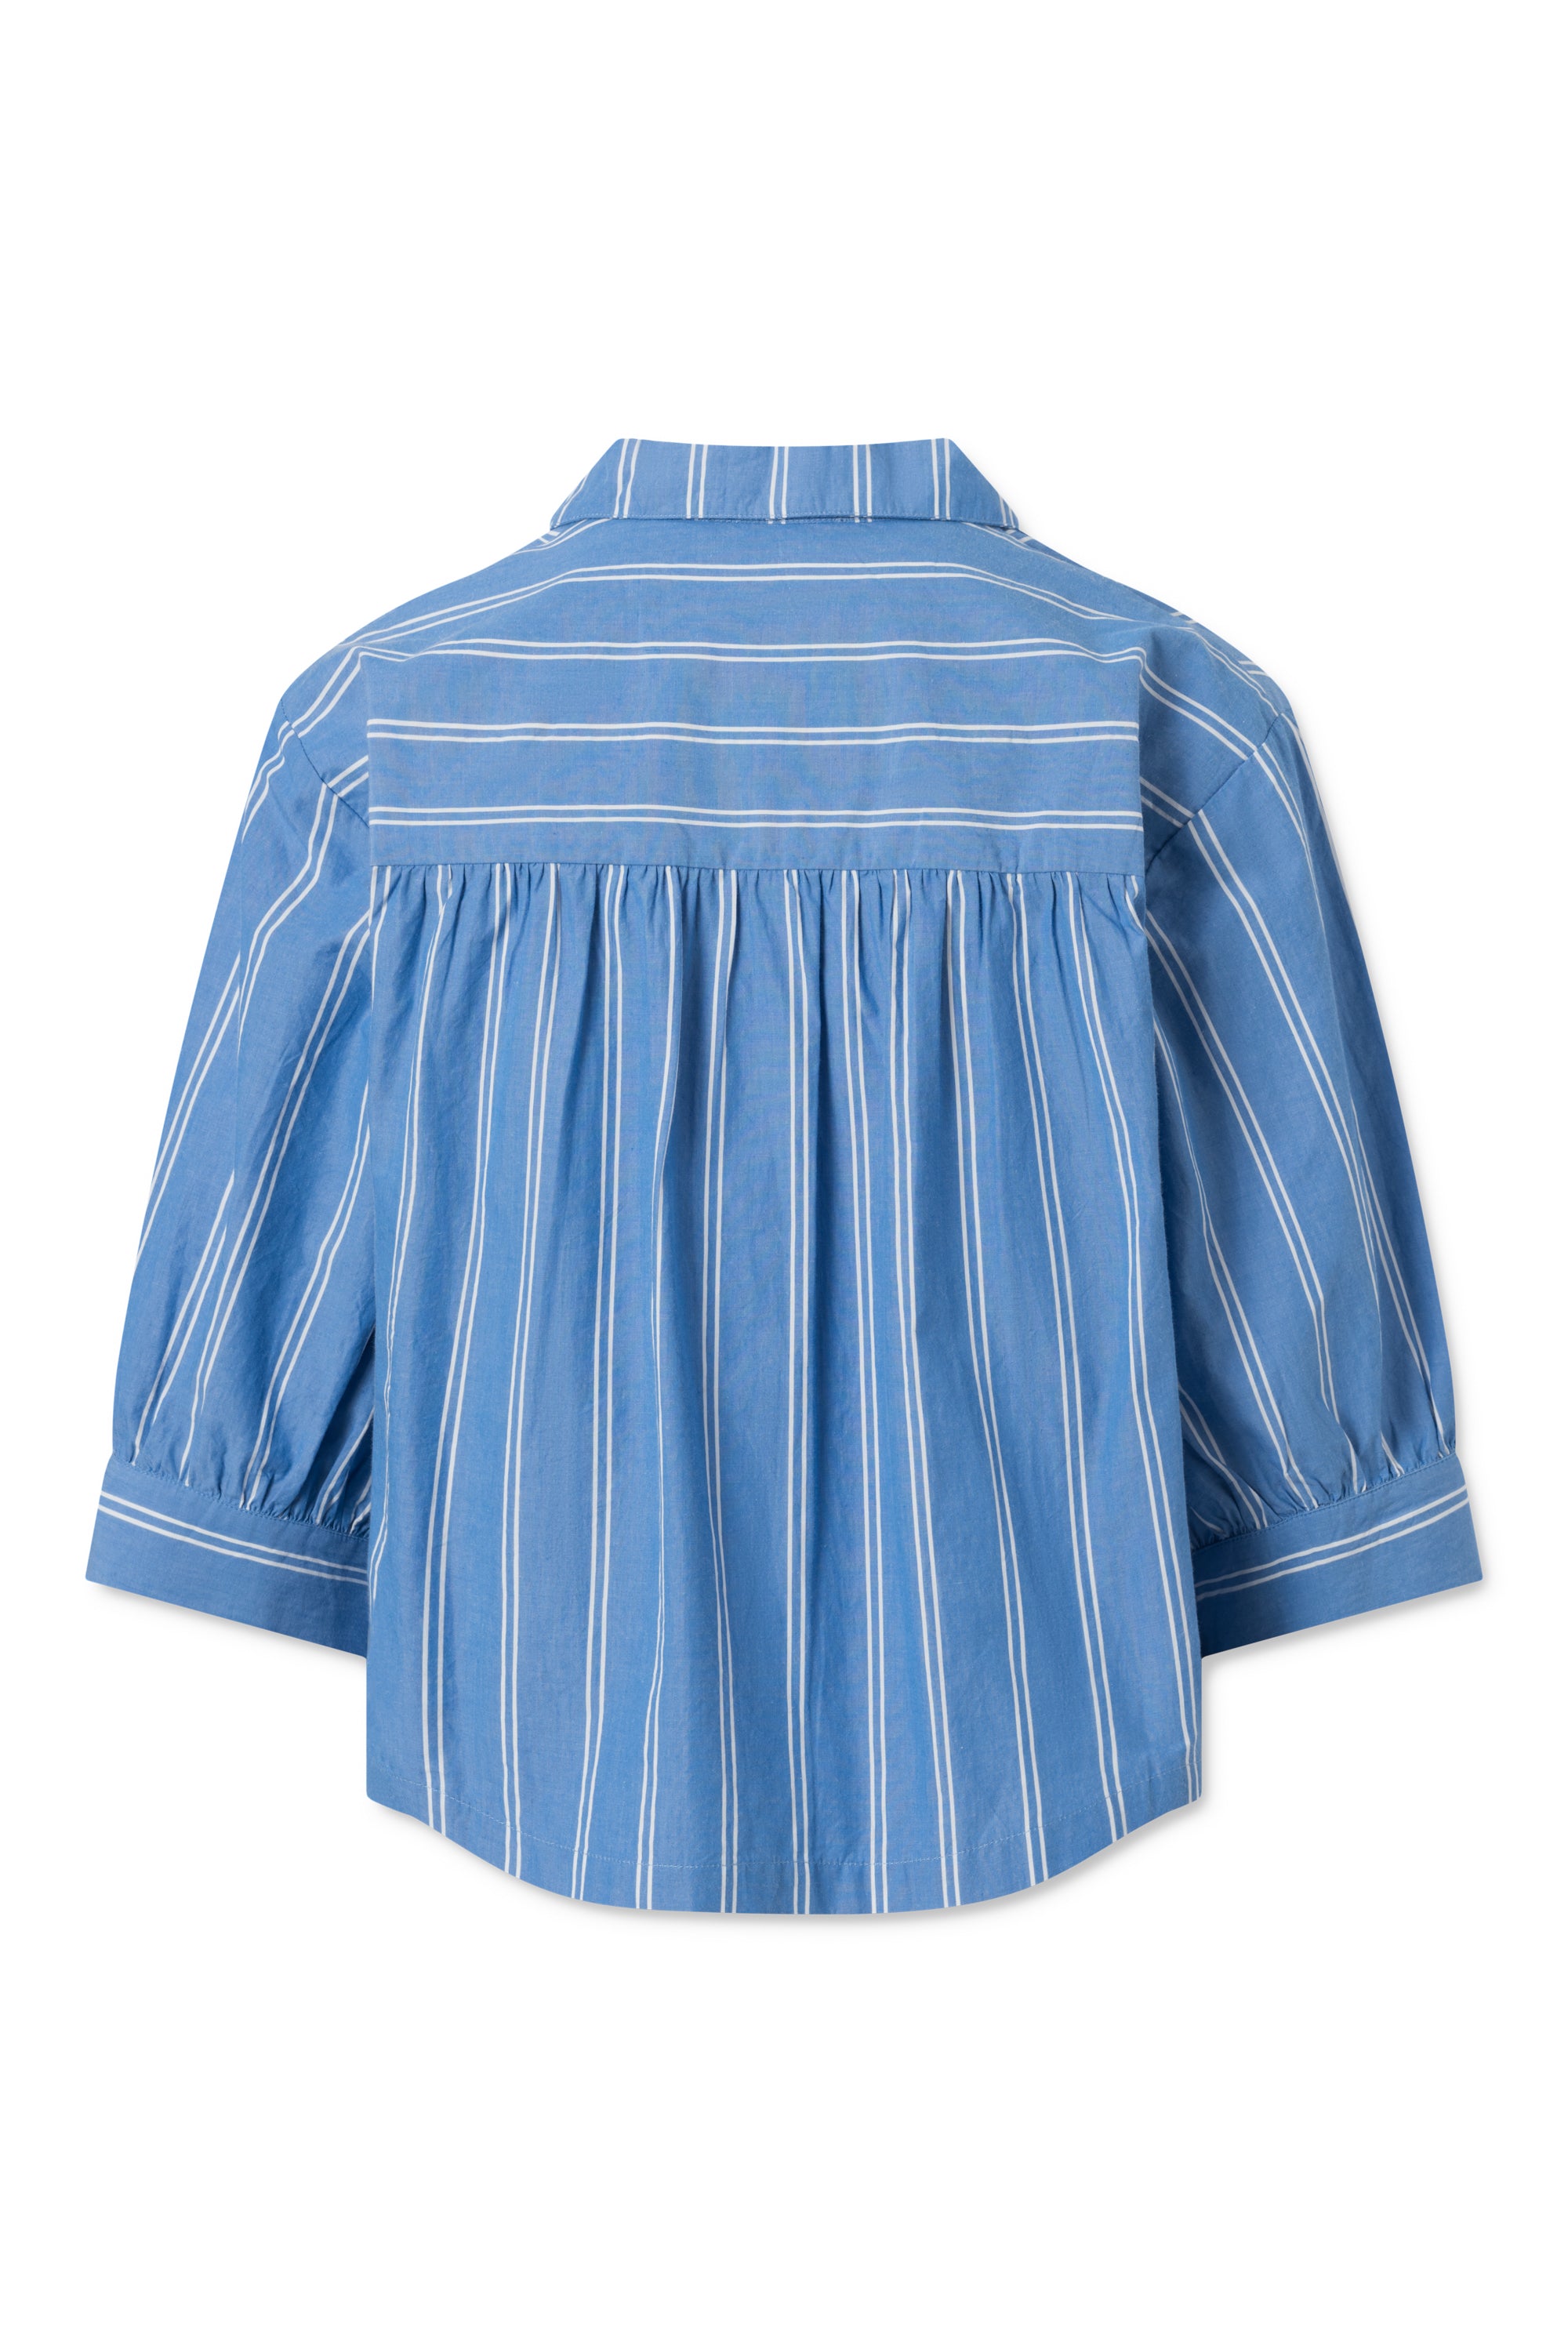 Nué Notes Elton Shirt - Blue Stripe SHIRTS 494 BLUE STRIPE